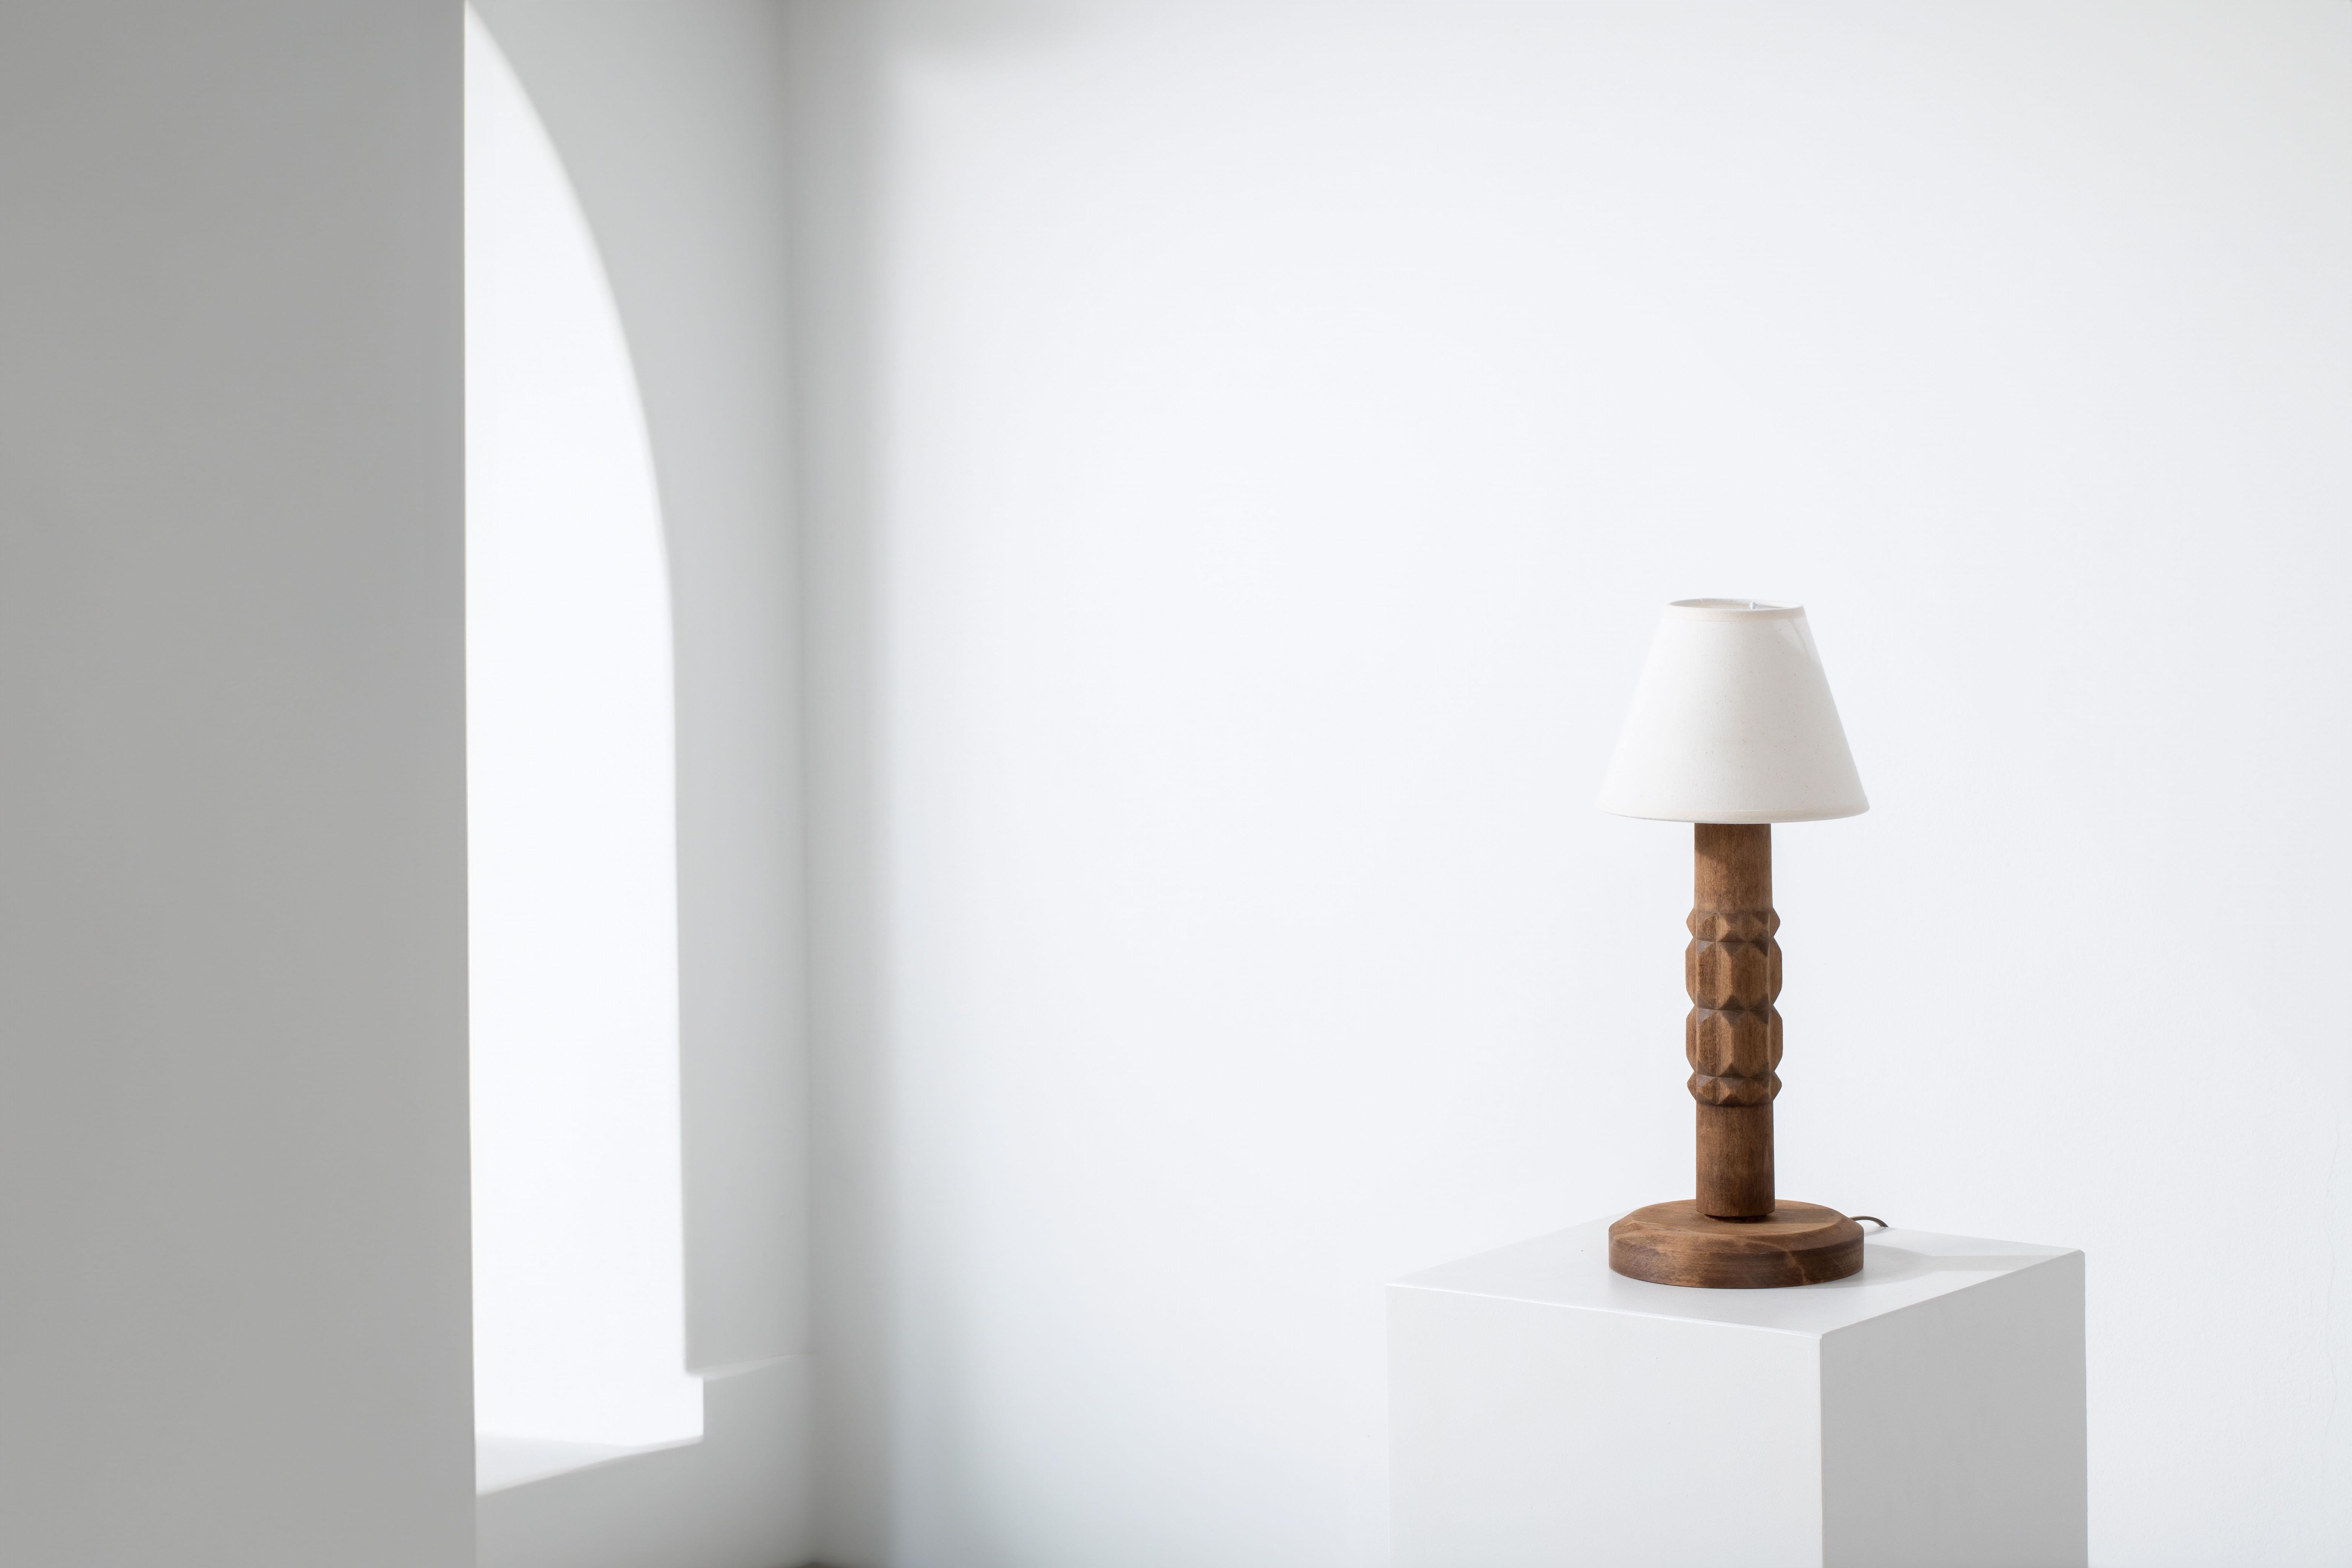 Elegante lampe de table sculptée à la main : Un chef-d'œuvre des années 1940 inspiré par Dudouyt

Entrez dans l'élégance raffinée des années 1940 avec cette exquise lampe de table sculptée à la main, qui rappelle le style emblématique de Charles